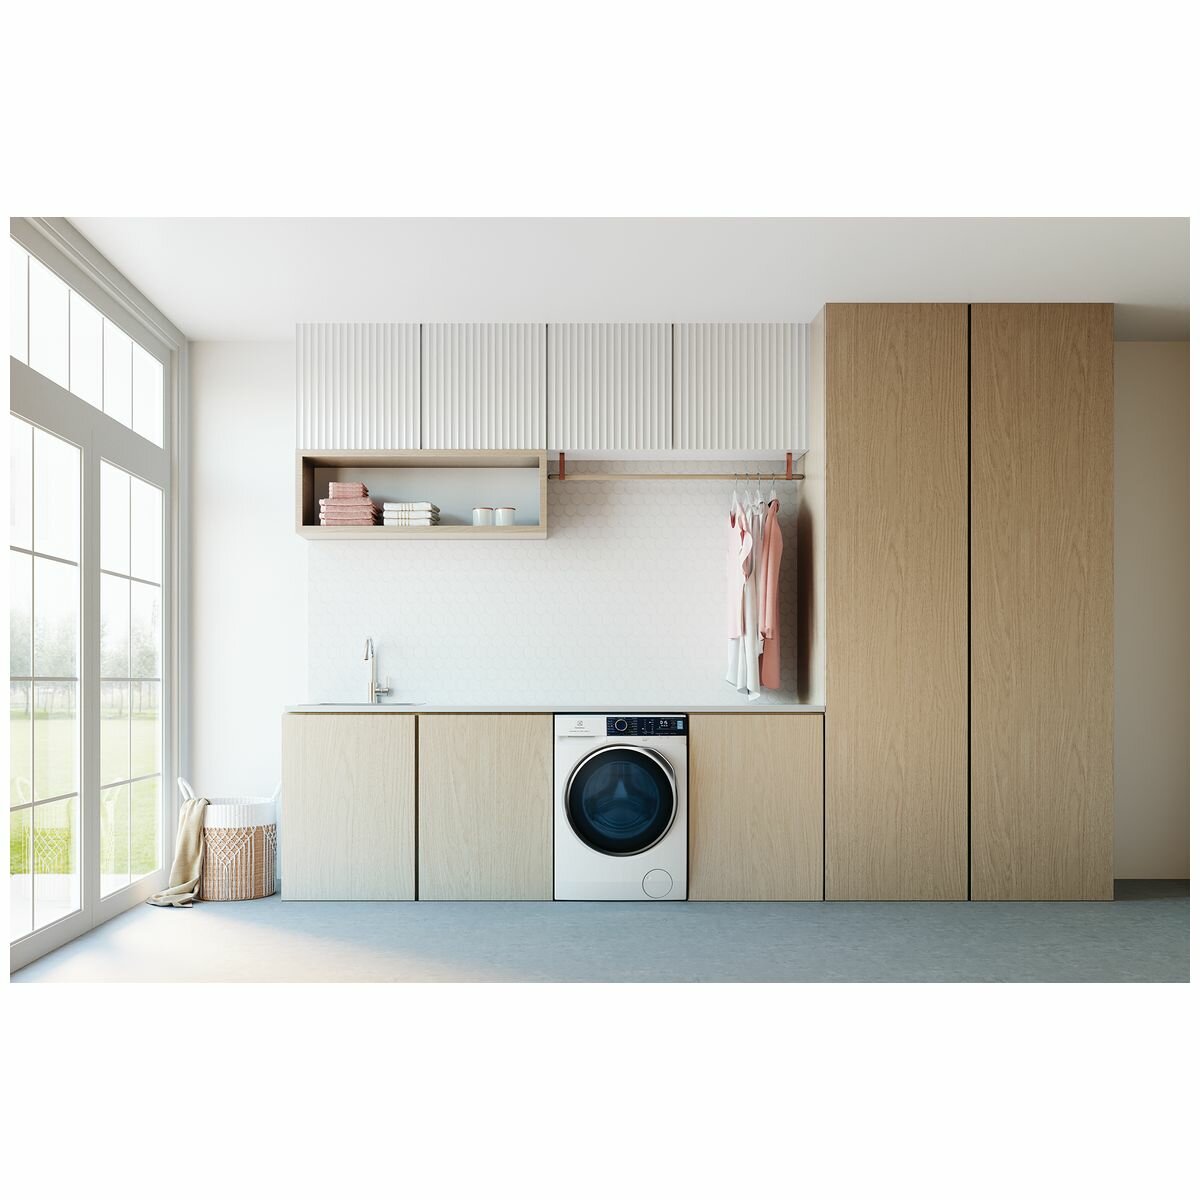 Electrolux 8 kg Front Load Washer - Brisbane Home Appliances